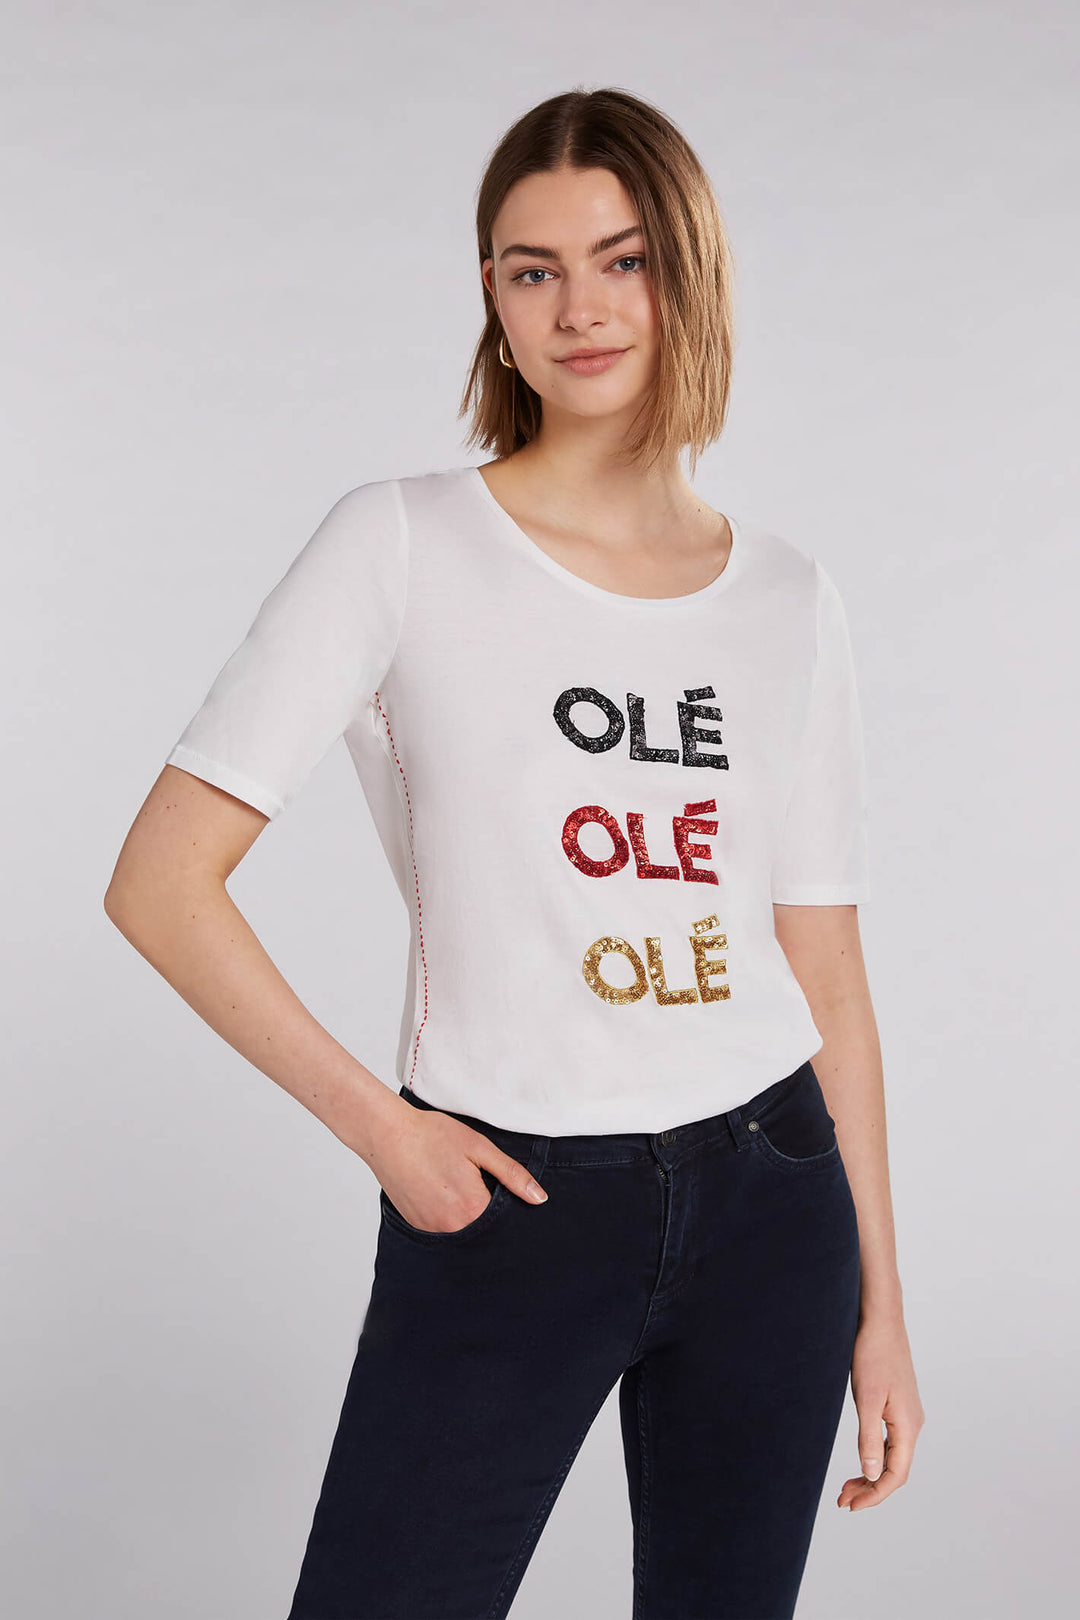 Oui 71498 Ole Ole Off-White T-Shirt - Olivia Grace Fashion